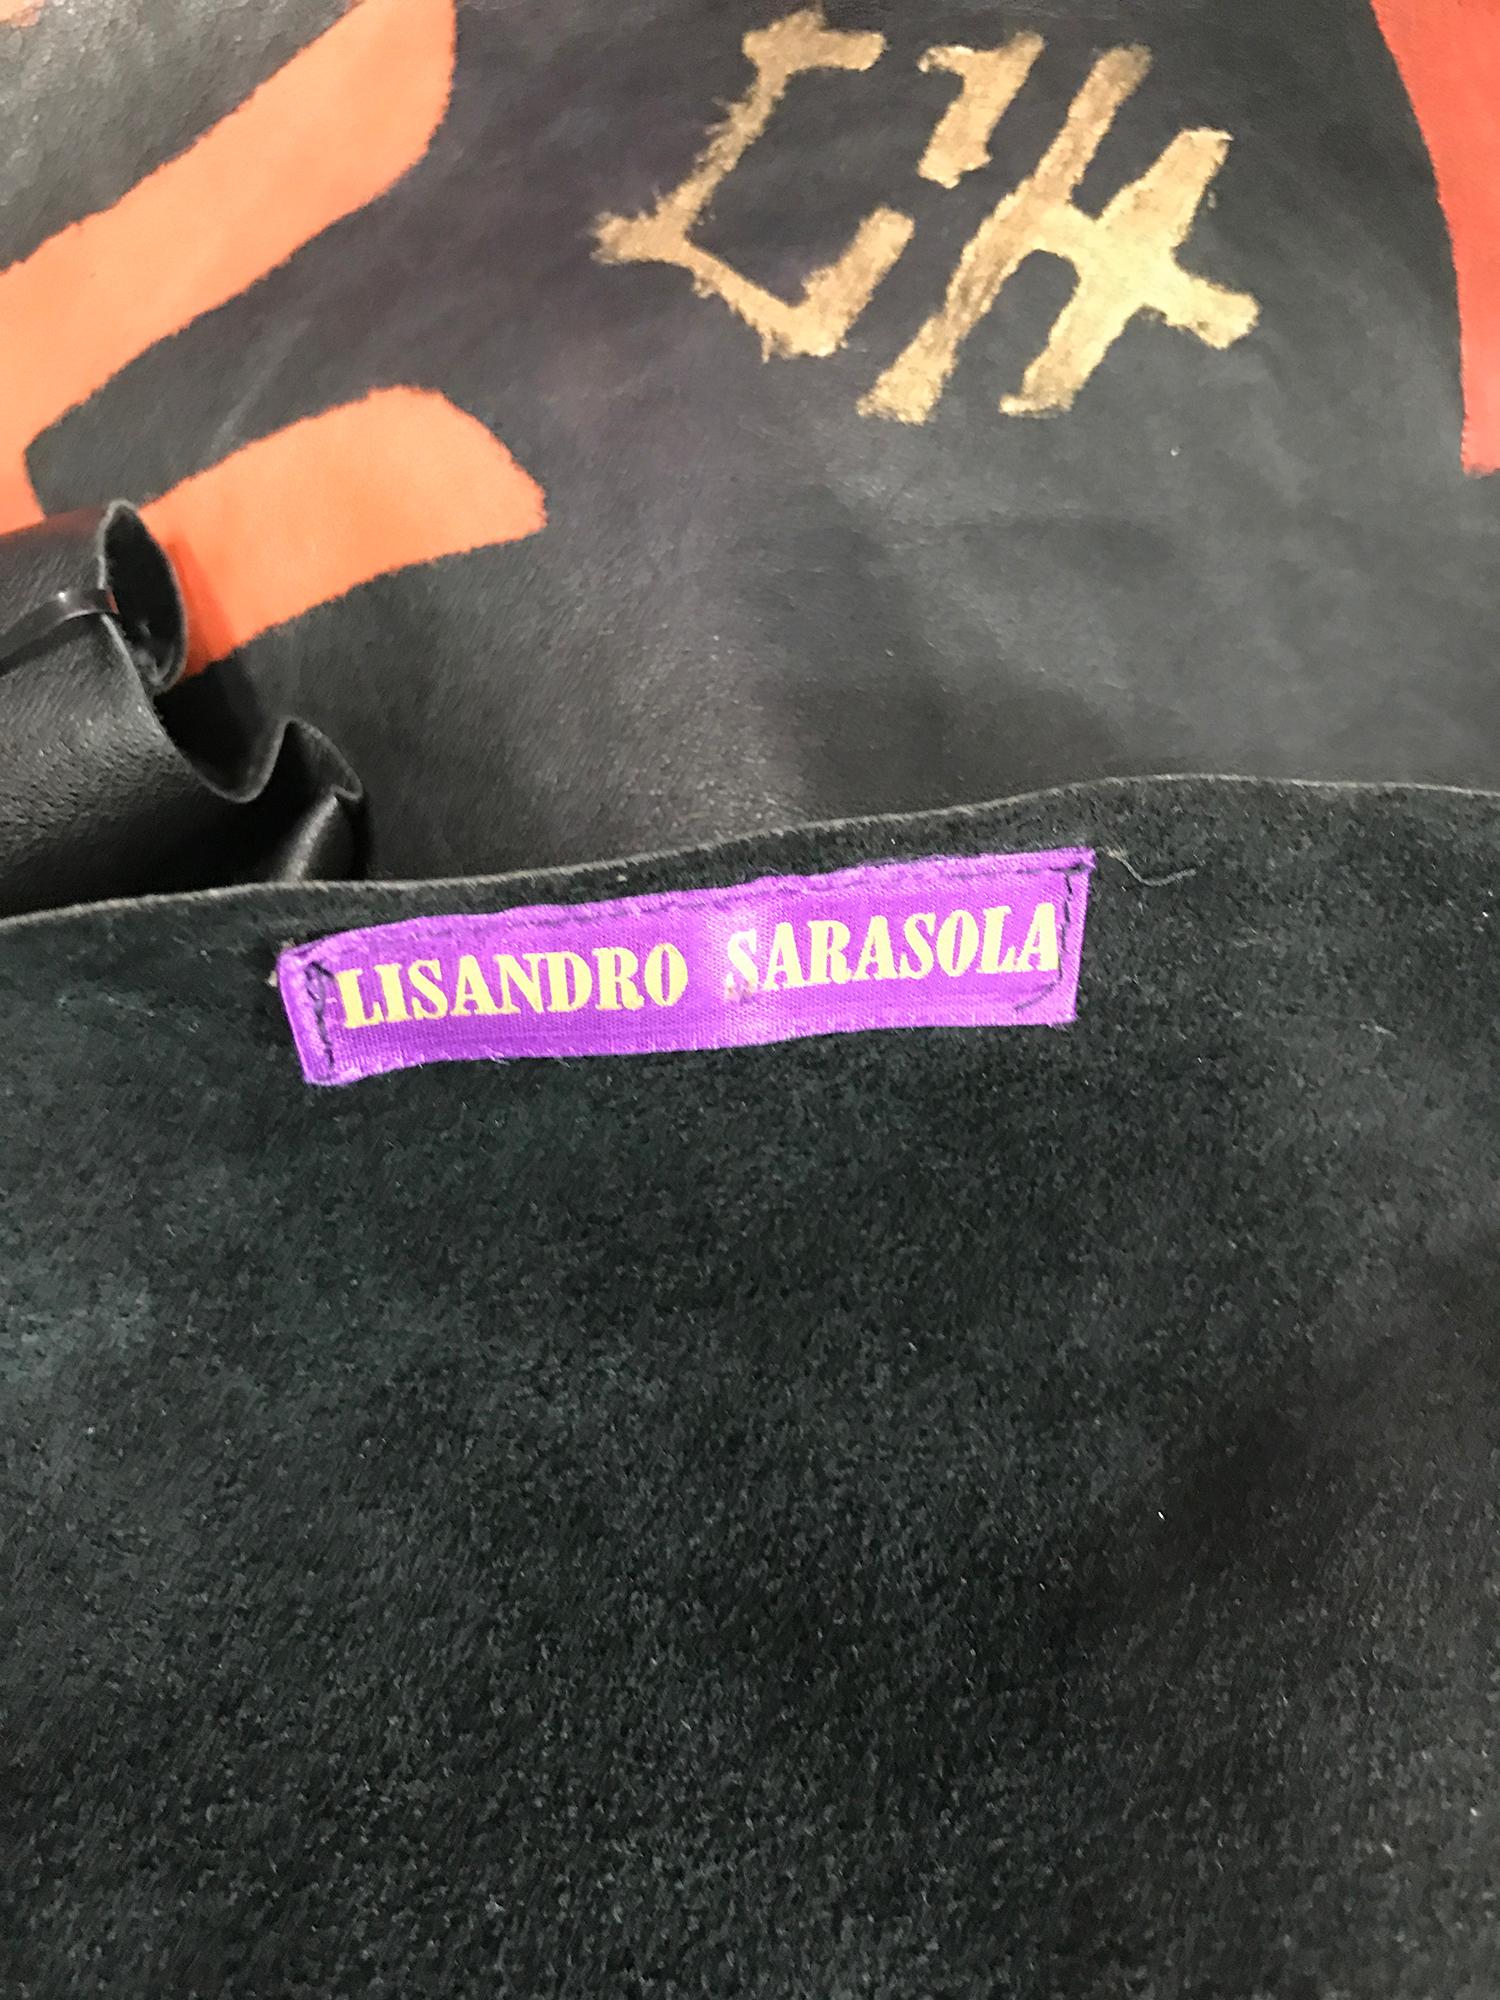 Lisandro Sarasola Hand Painted Leather Jacket 1980s 4